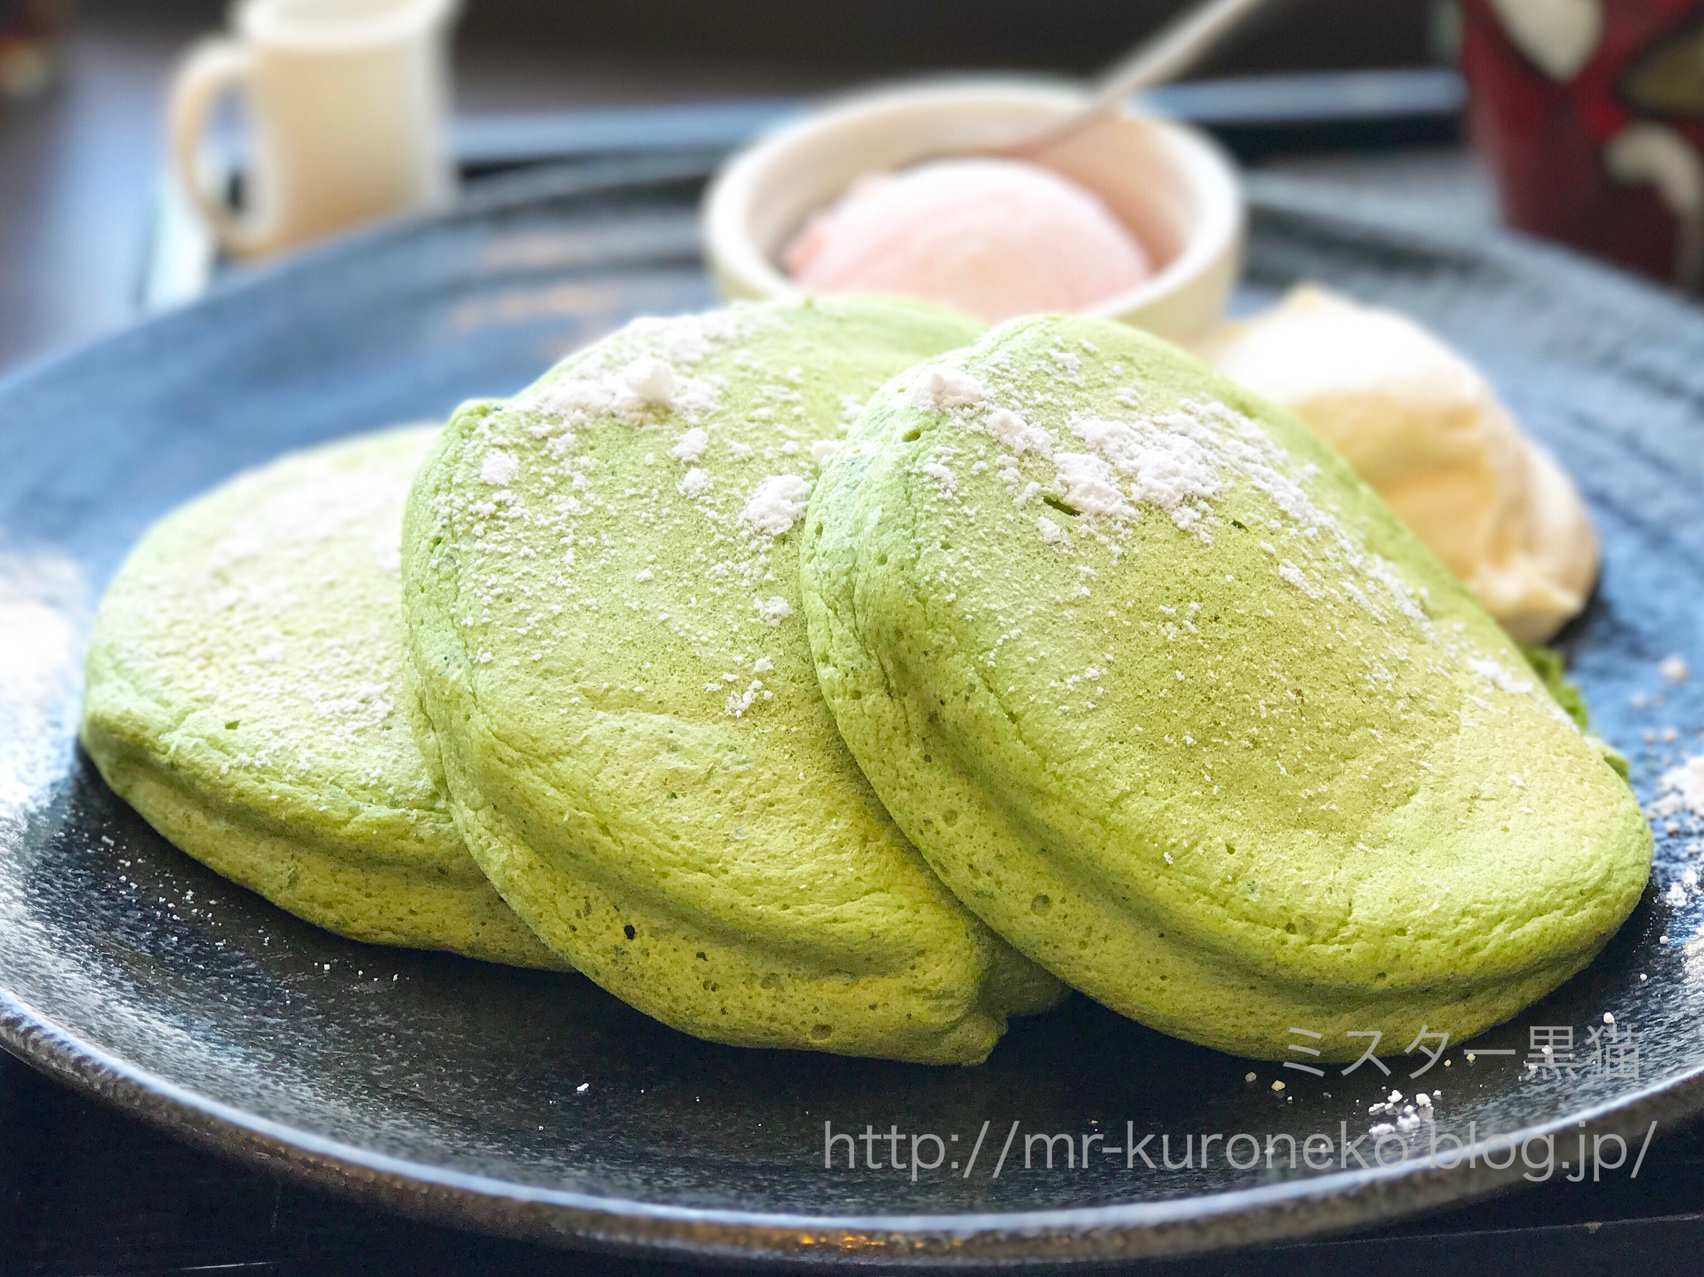 Kanon Pancakes カノンパンケークス 東札幌 抹茶のパンケーキ ミスター黒猫のカフェめぐり パンケーキを日本一実食